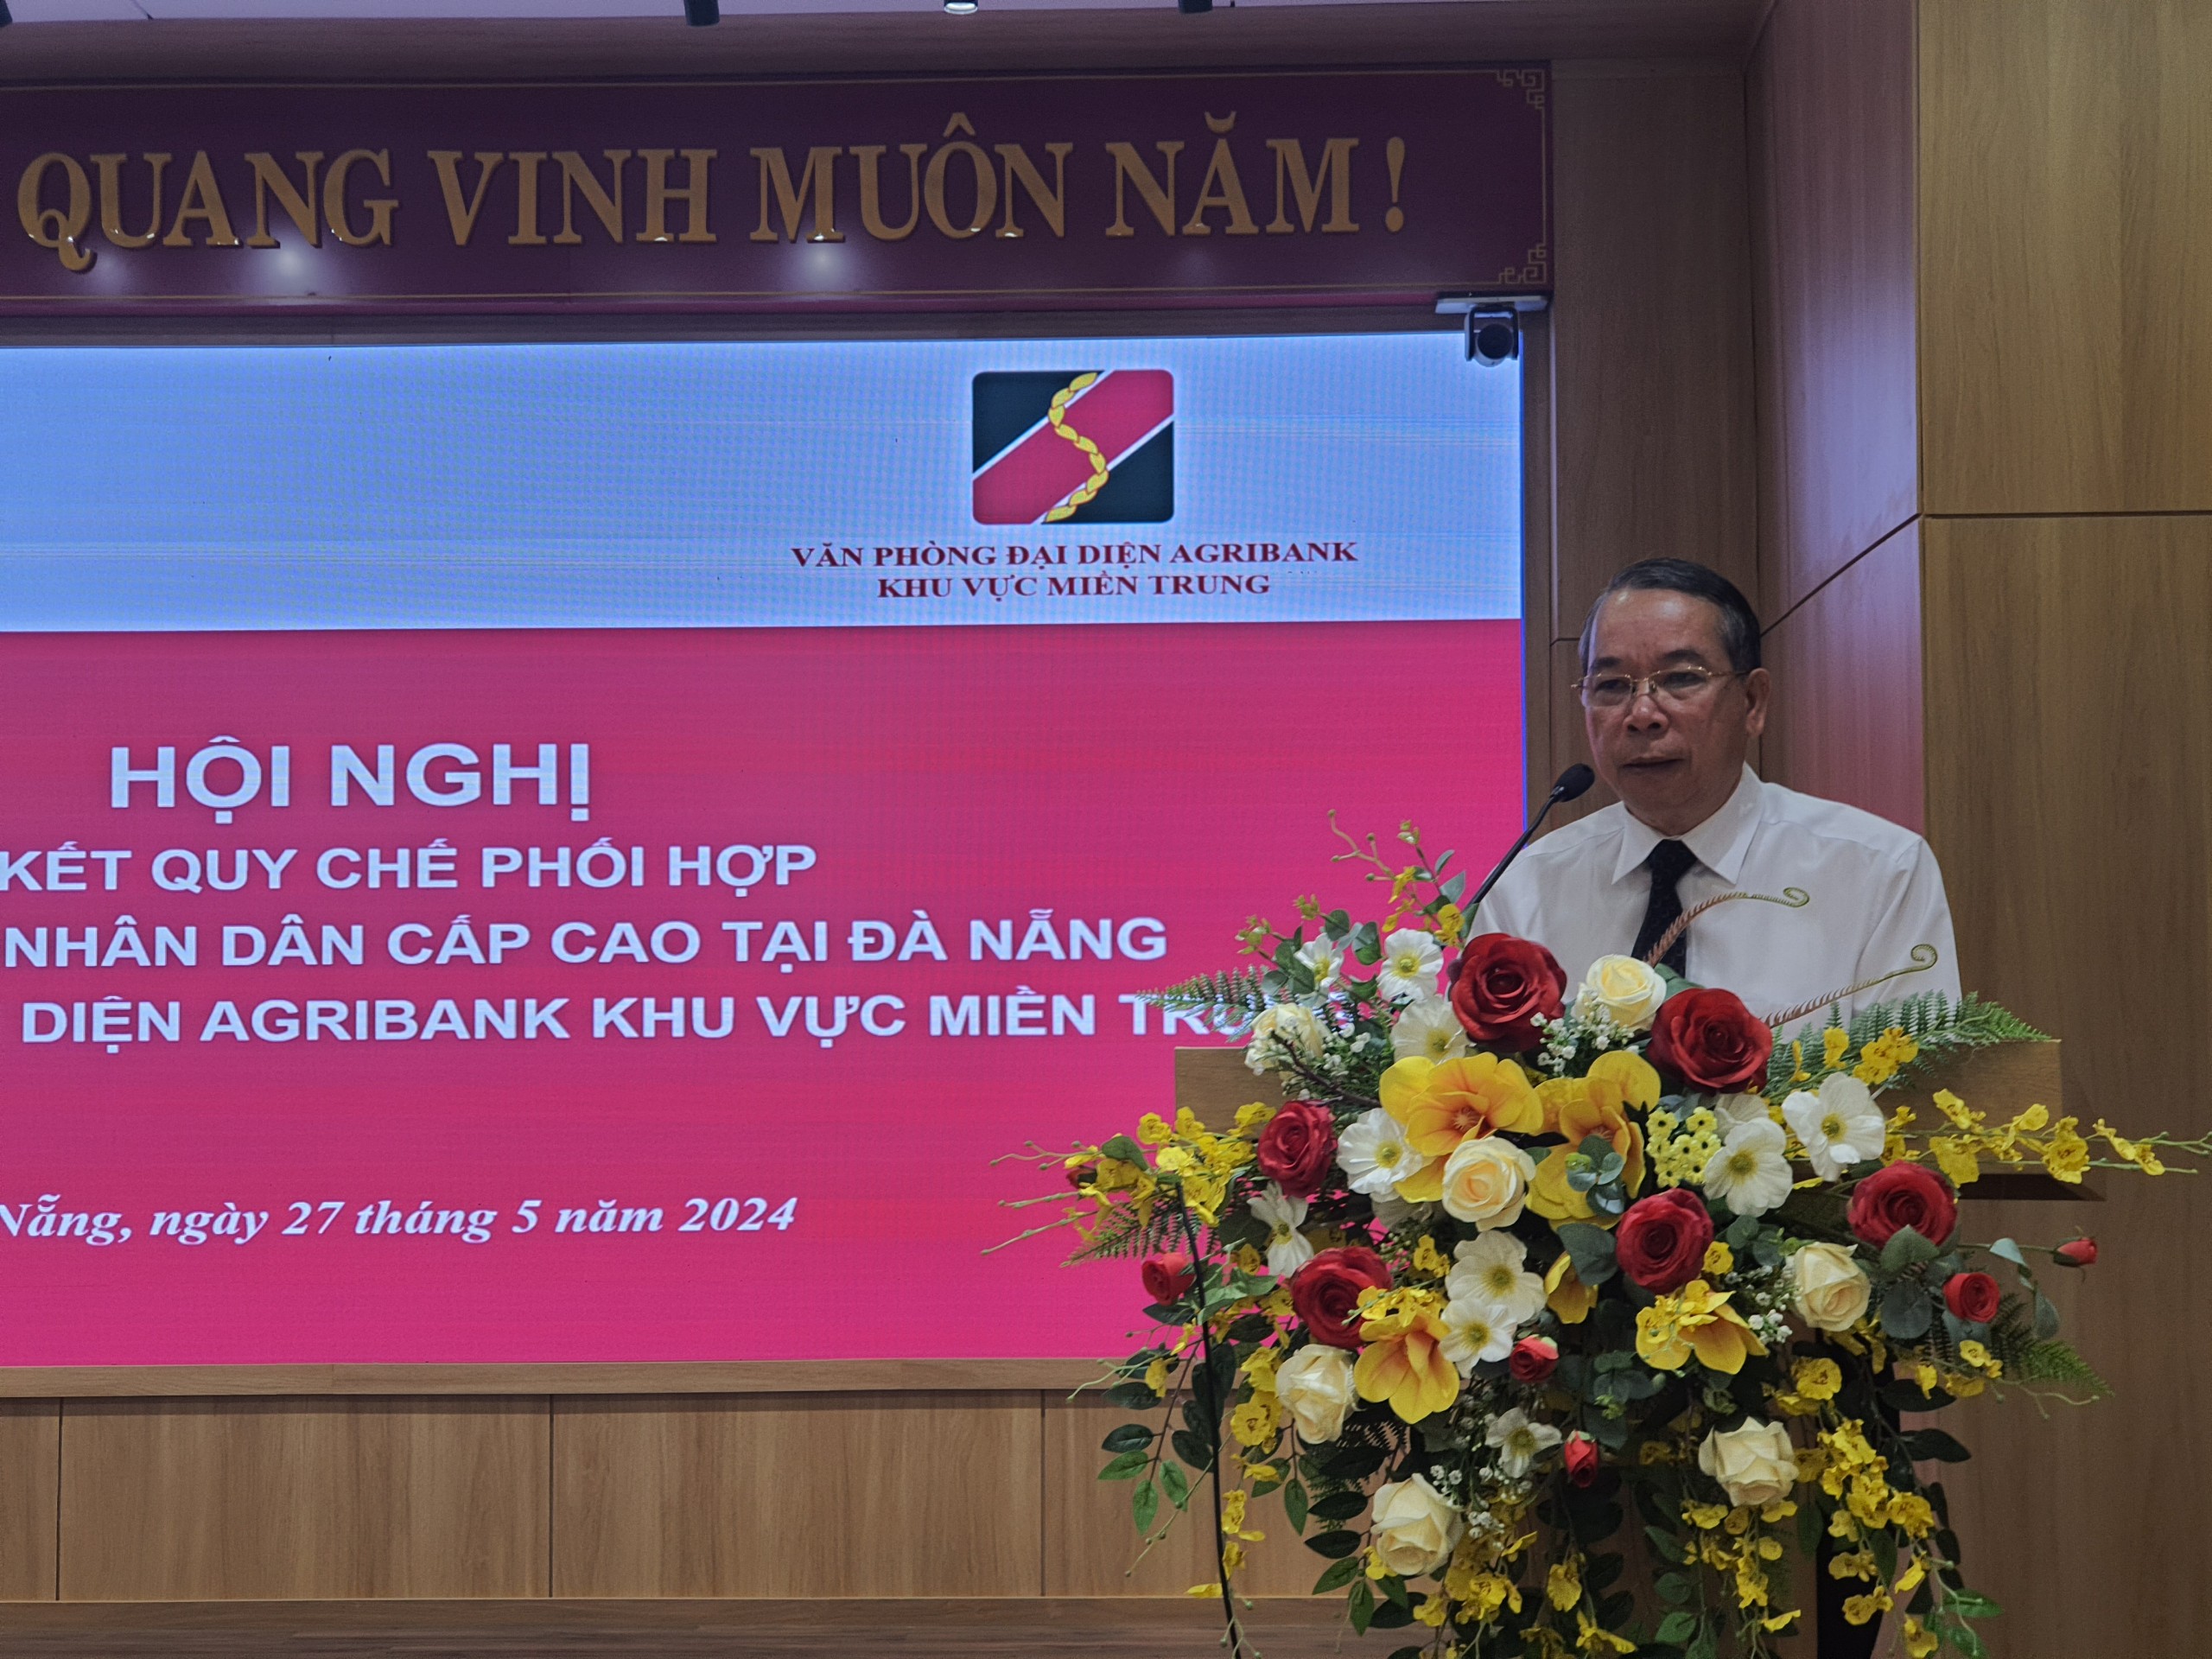 Agribank khu vực miền Trung và Tòa án nhân dân cấp cao tại Đà Nẵng ký kết quy chế phối hợp- Ảnh 1.